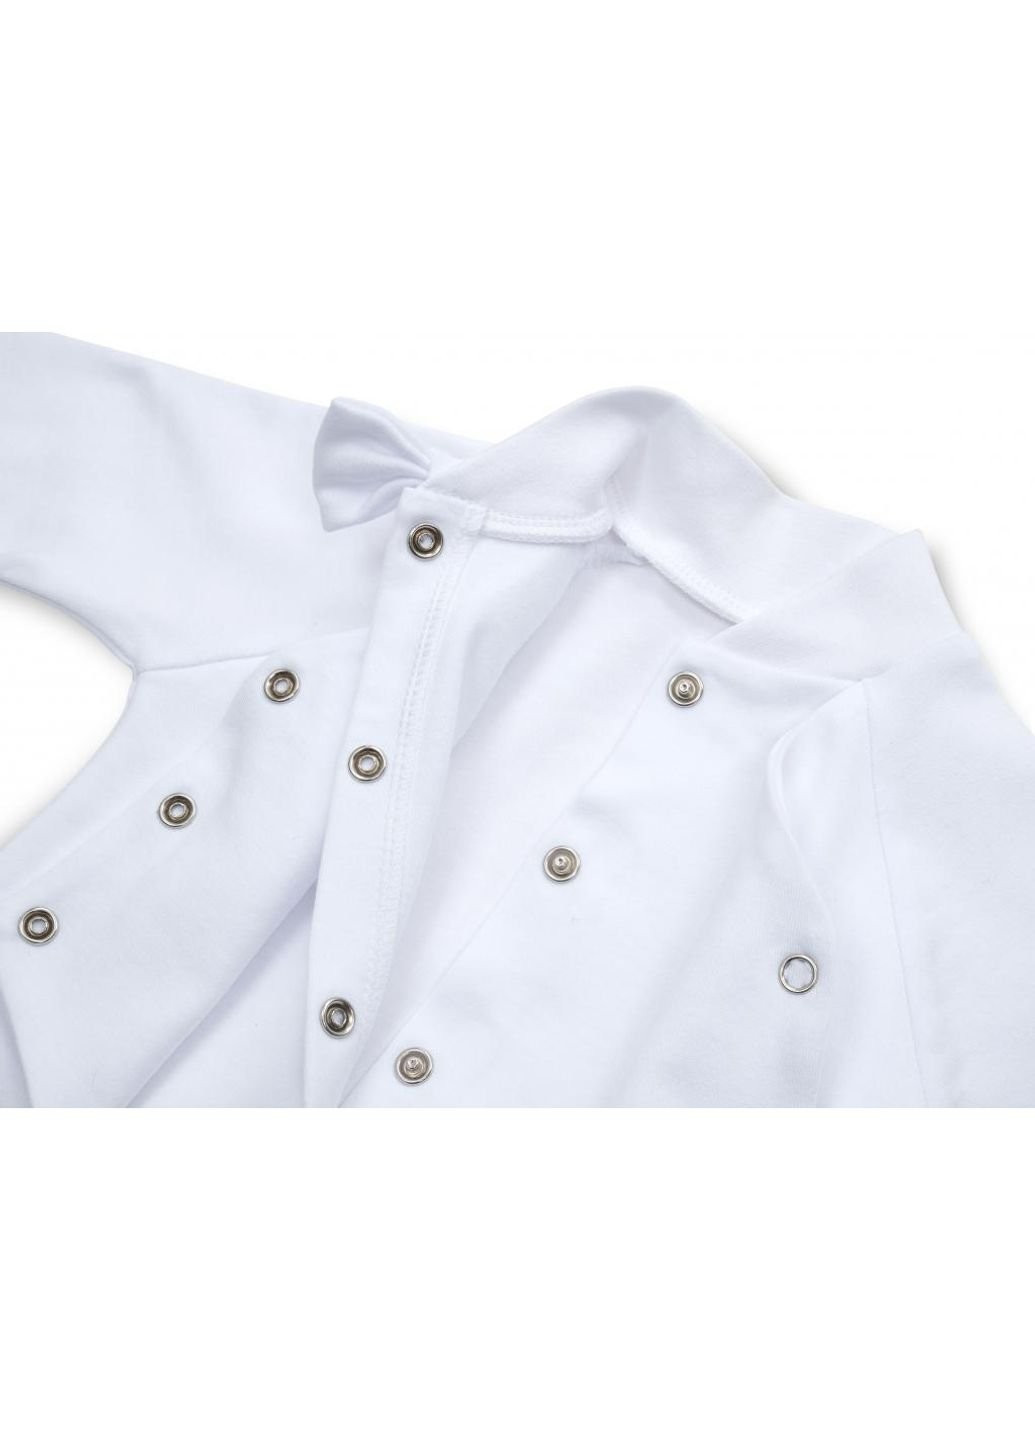 Белый демисезонный набор детской одежды тм баранчик бо для хрещення (078-01-56b-white) Power